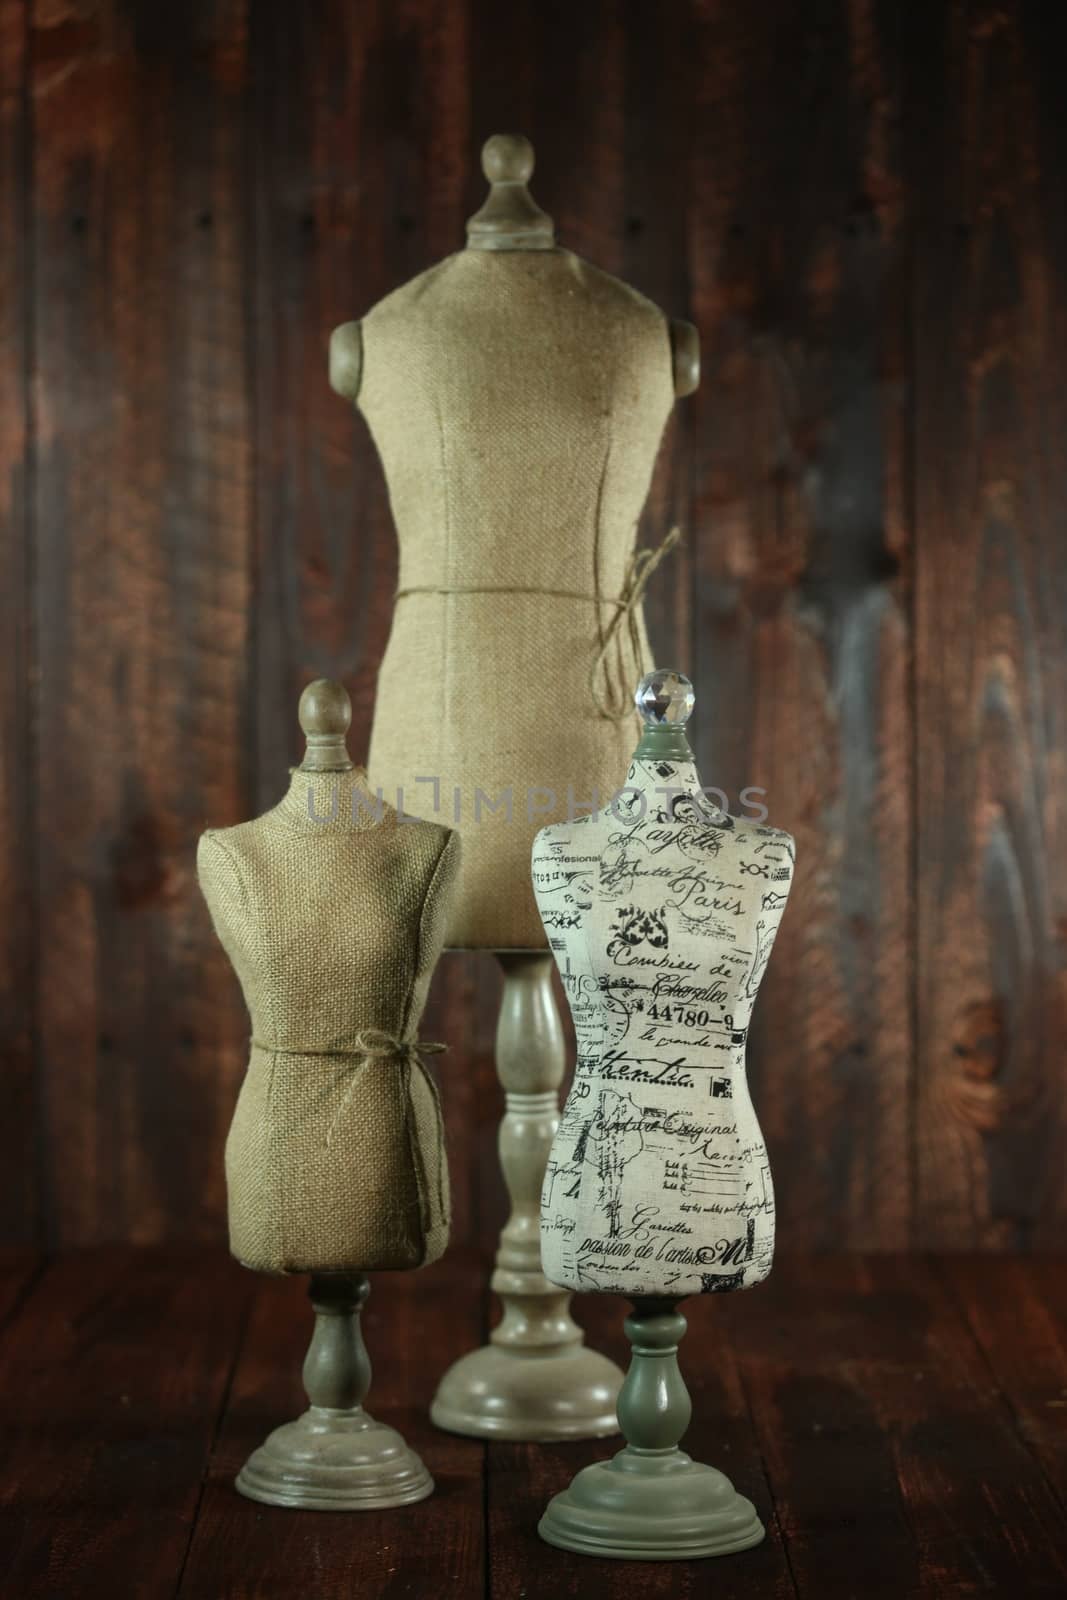 Vintage Antique Mannequin Busts on Wood Grunge Background